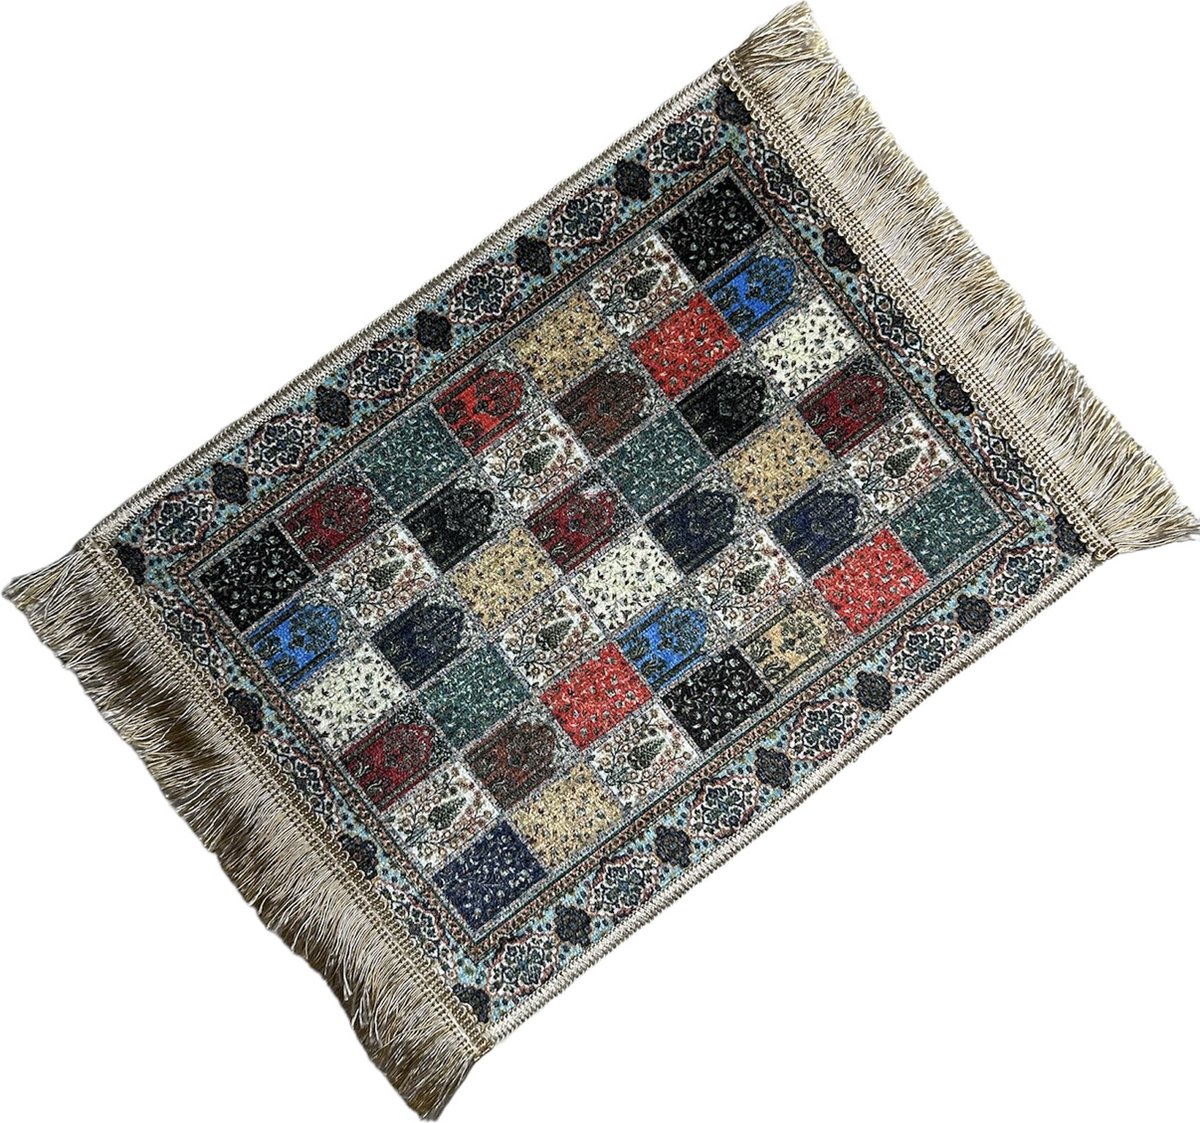 Mousepad - Muismat - Perzische tapijt muismat - Oosterse muismat - 33x22 cm